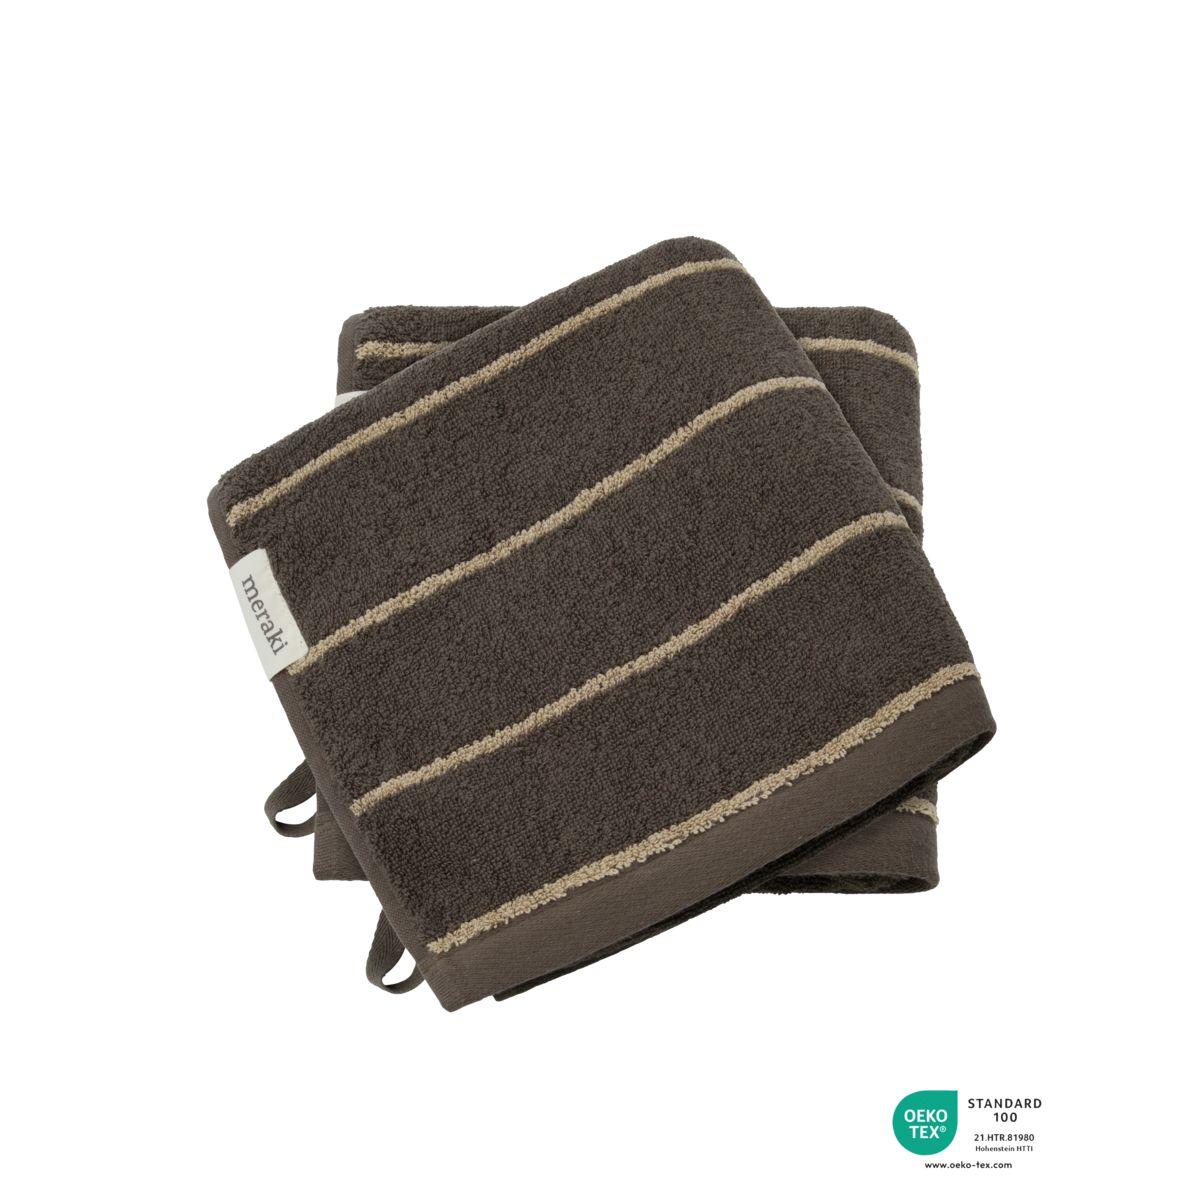 Meraki Towel Stripe 50x100 Cm, Army